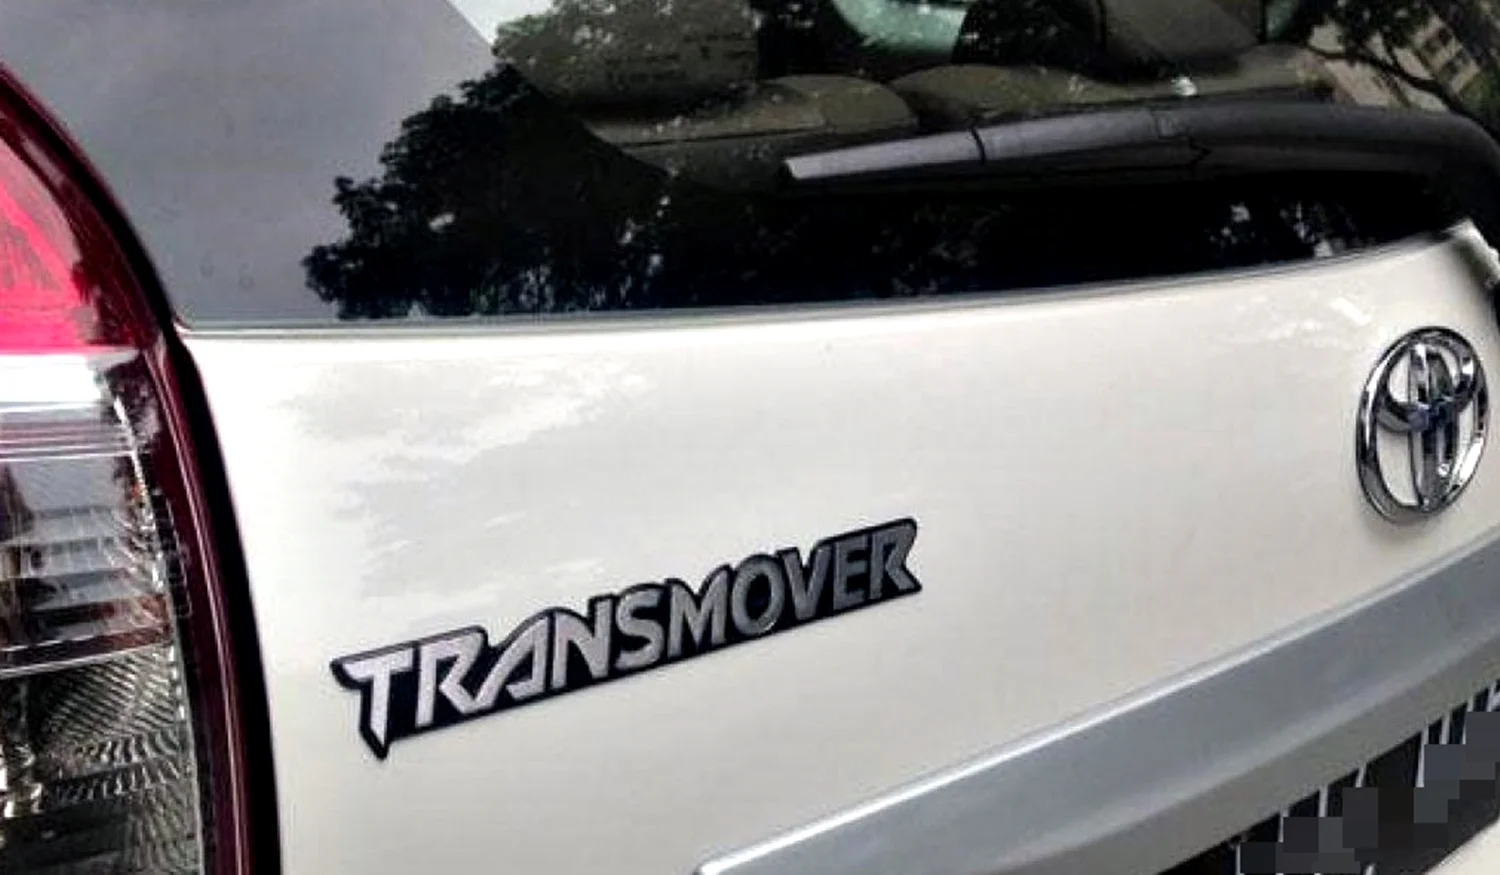 Logo Toyota Transmover.